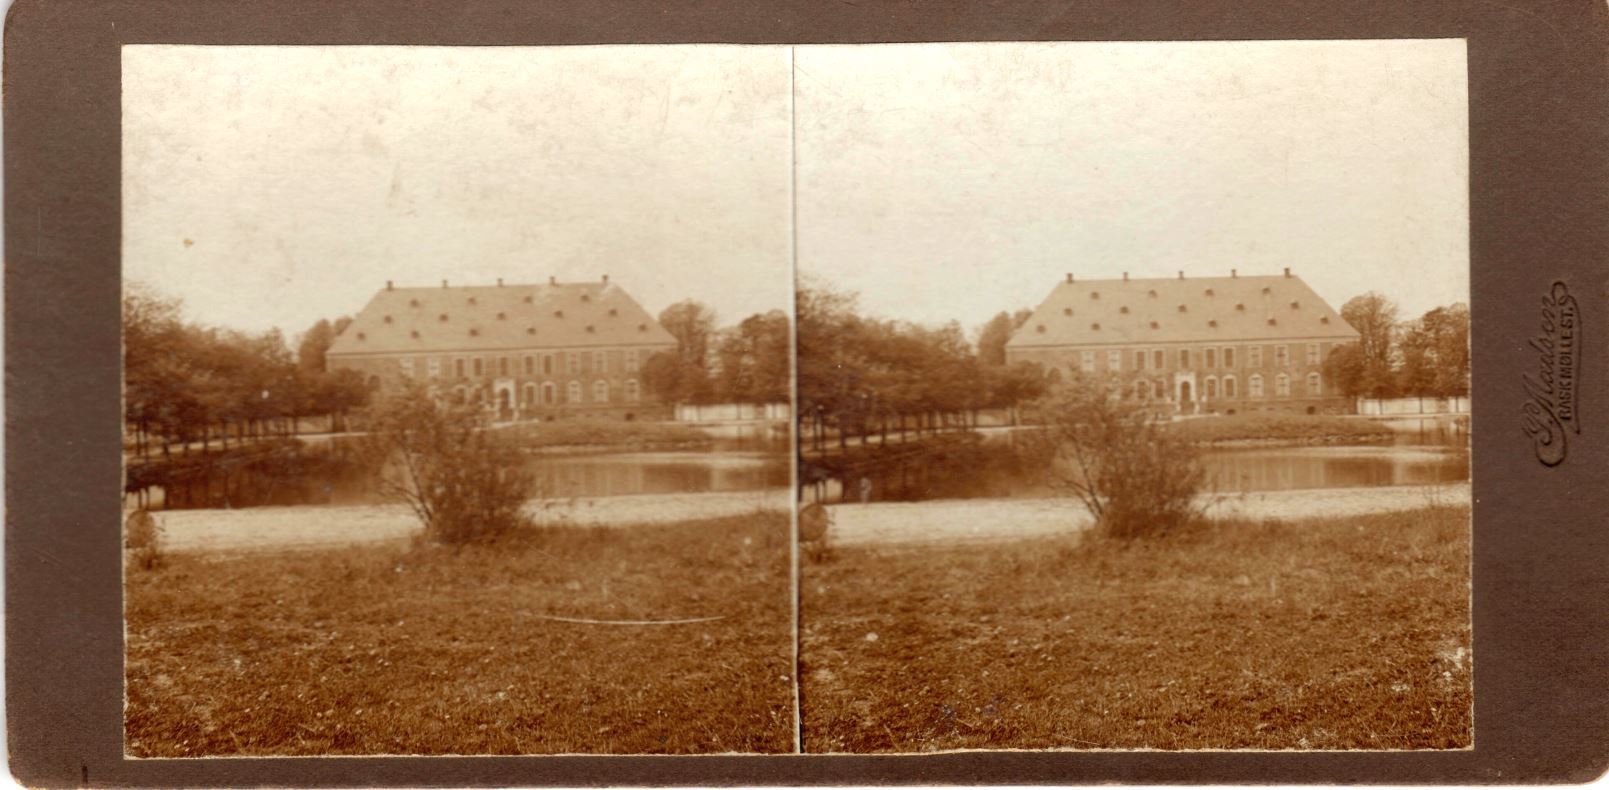 11432.11  Valdemars Slot på Tåsinge cirka 1914  Fotograf Peter Møller, Rask Mølle